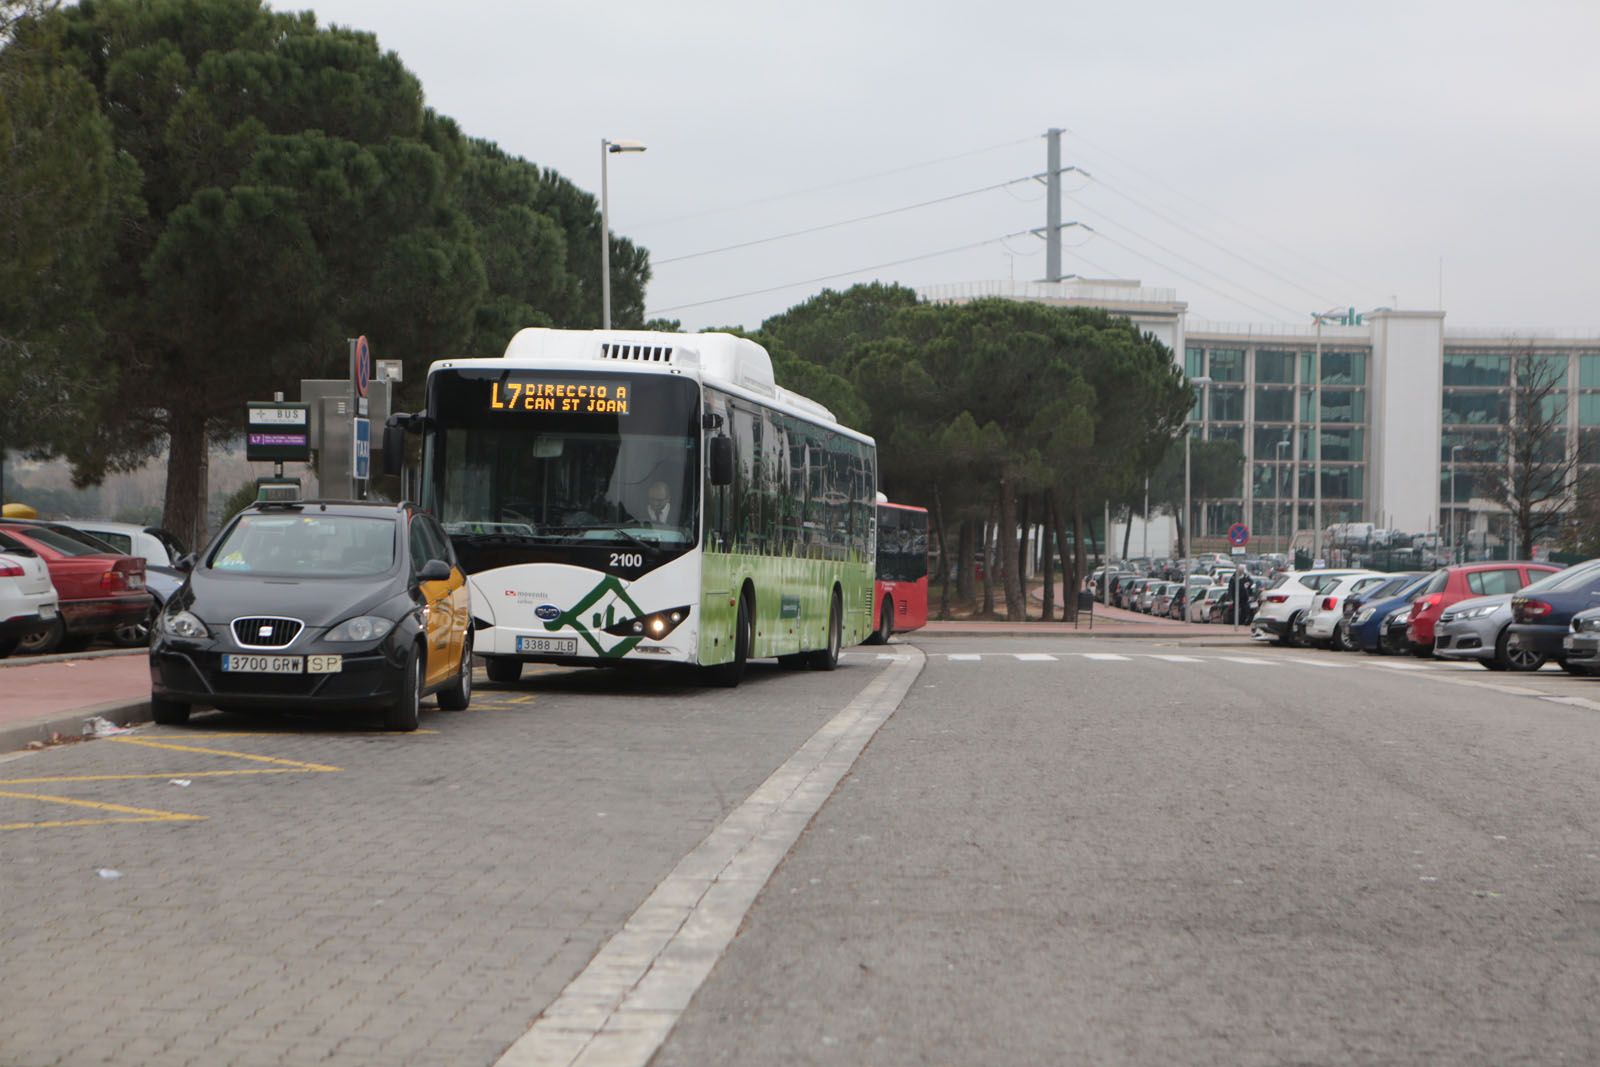 Un autobús a l'estació de Ferrocarrils de la Generalitat de Can Sant Joan FOTO: Artur Ribera